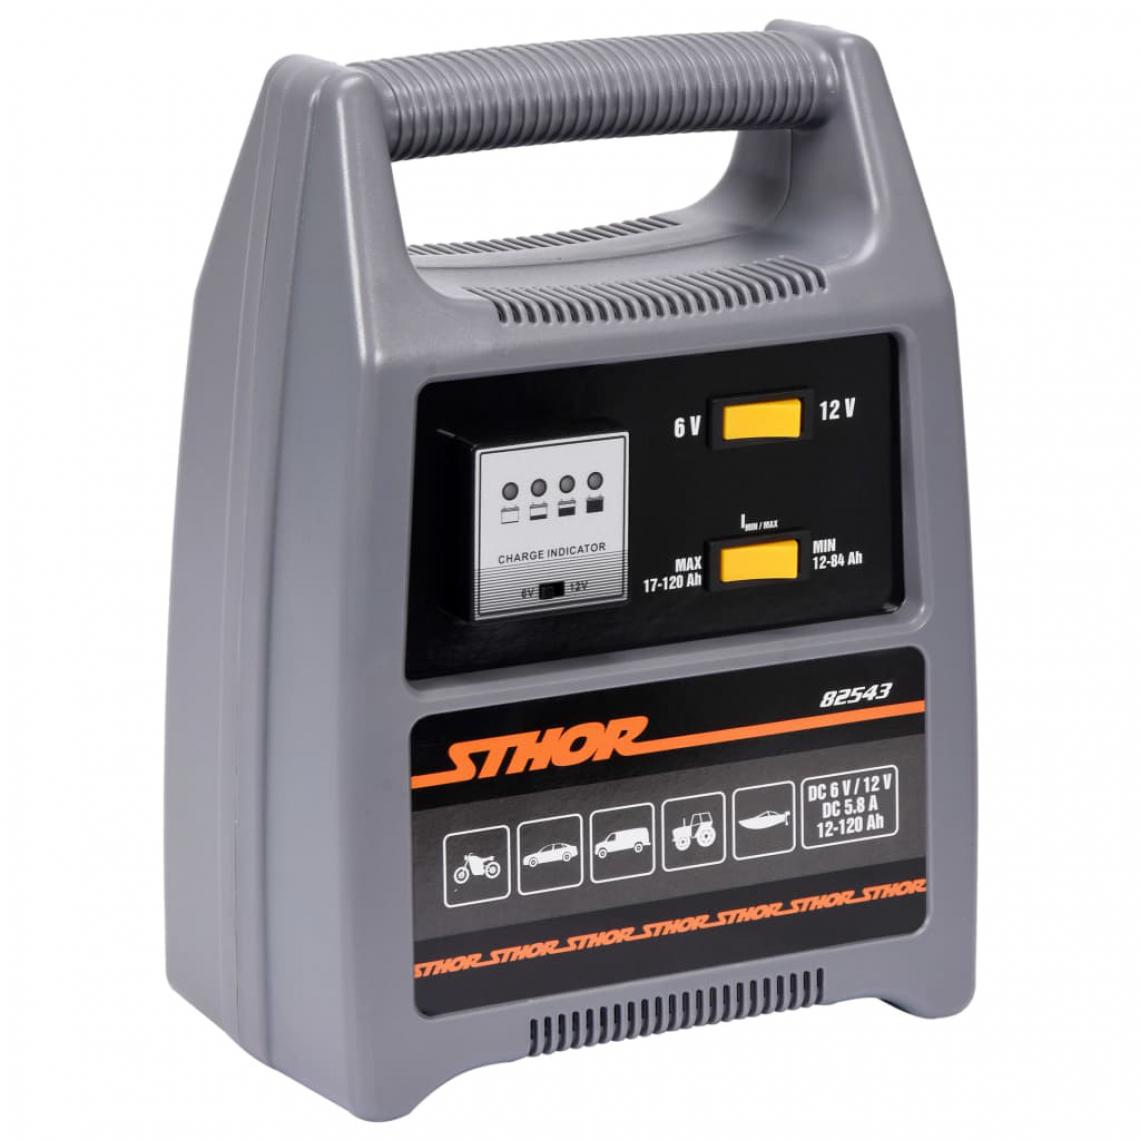 Sthor - Sthor Chargeur de batterie avec LED 6/12V 8A 120Ah - Chargeurs de piles